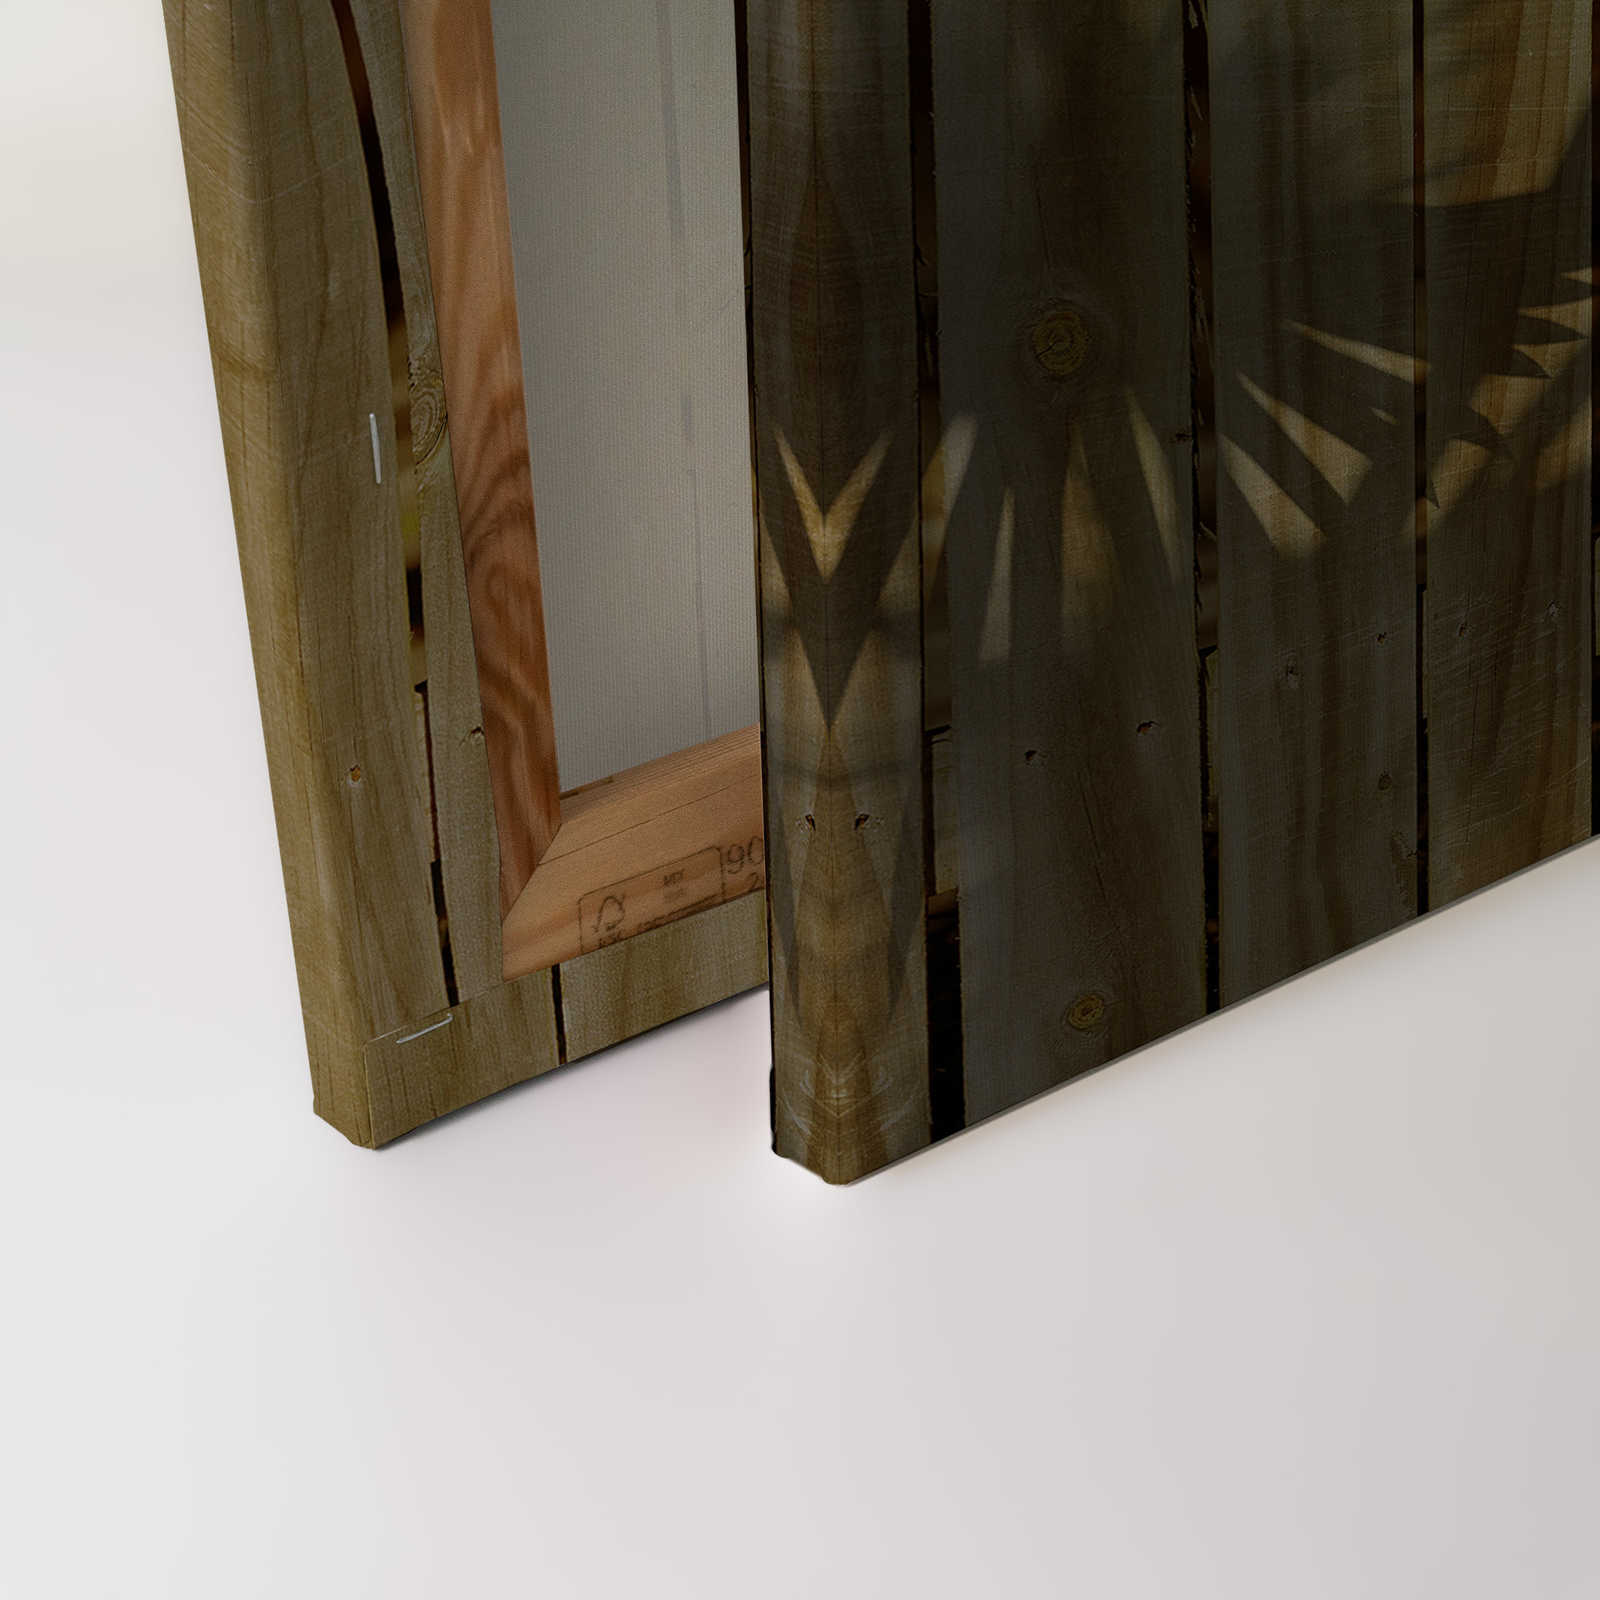             Canvas schilderij met houtlook en schaduw van palmbladeren - 0,90 m x 0,60 m
        